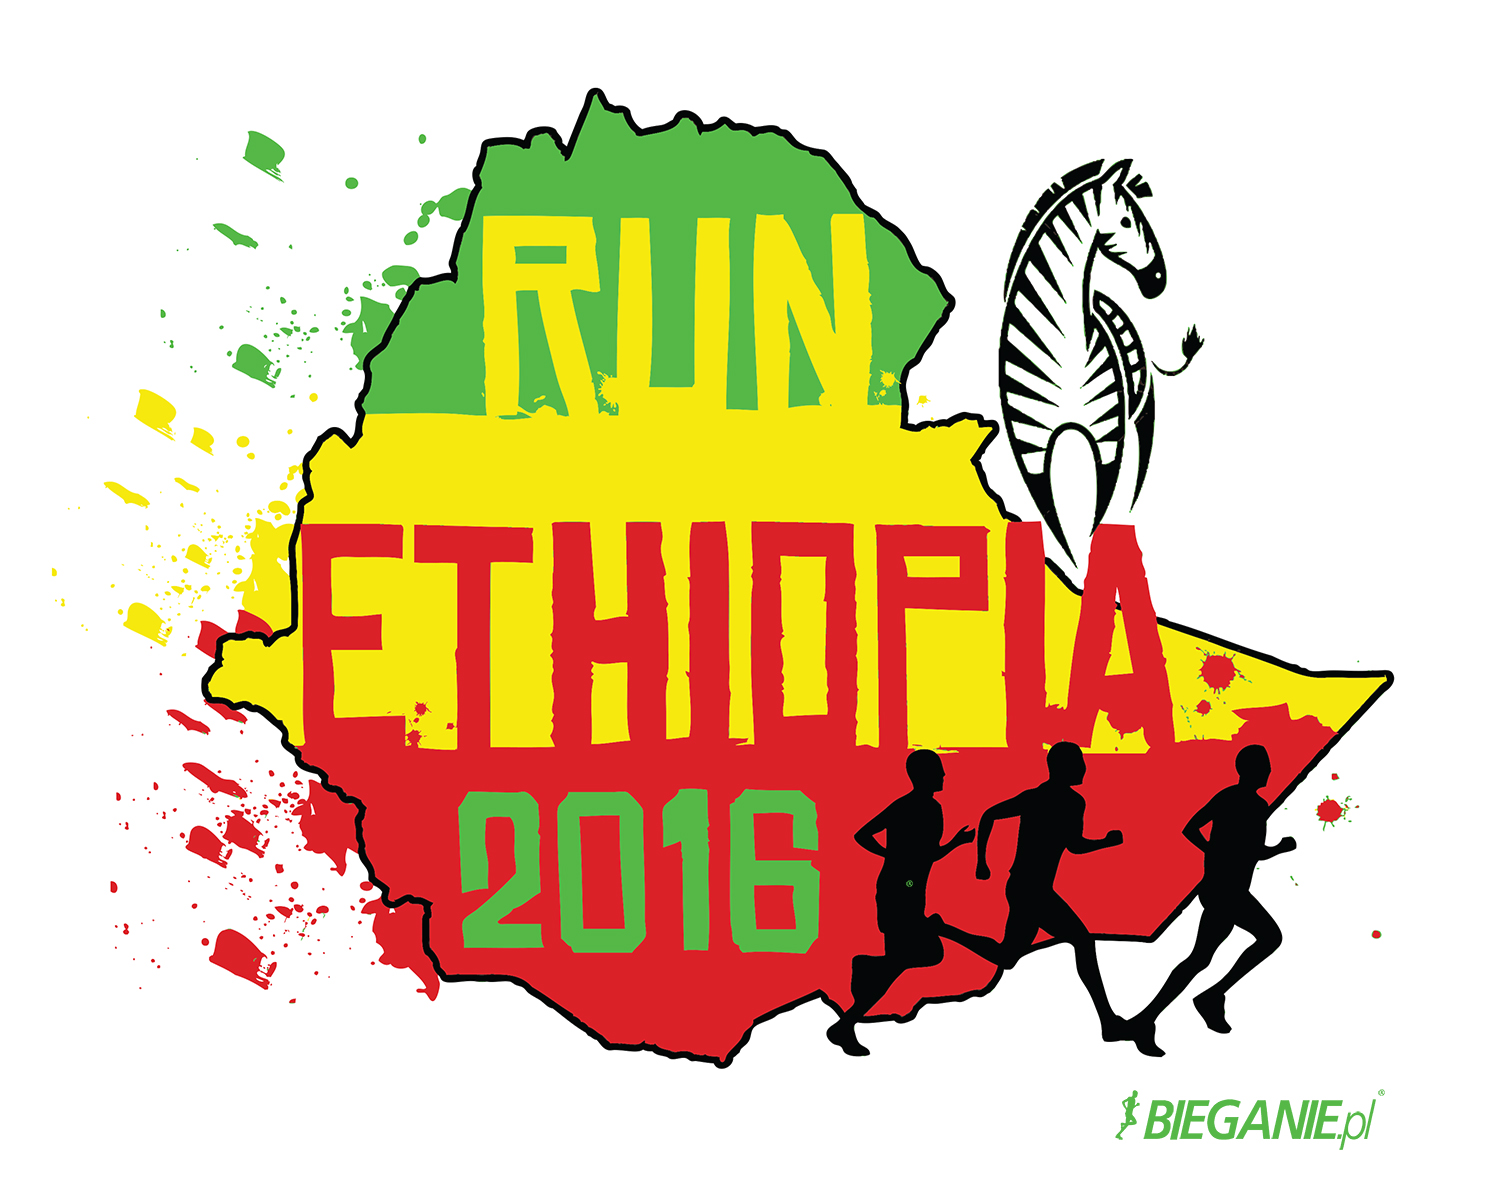 etiopia_grafika.jpg